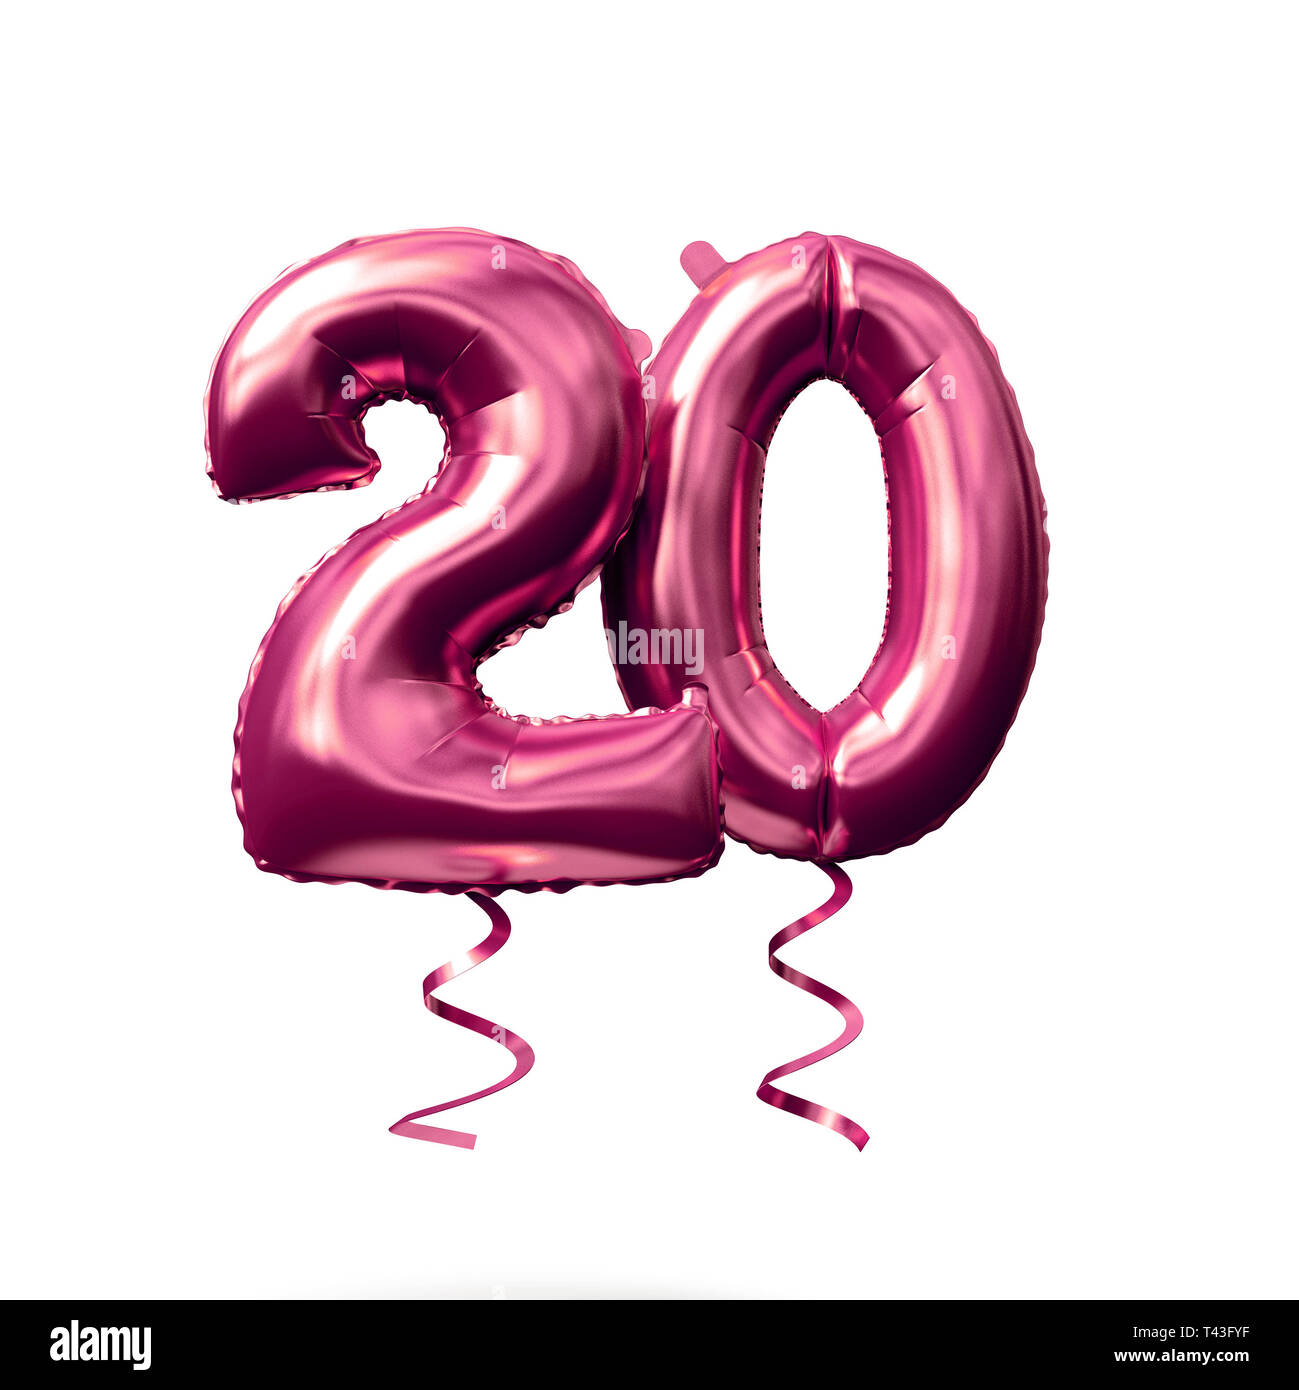 Nummer 20 Rose Gold Helium Ballon auf einem weißen Hintergrund.  3D-Rendering Stockfotografie - Alamy